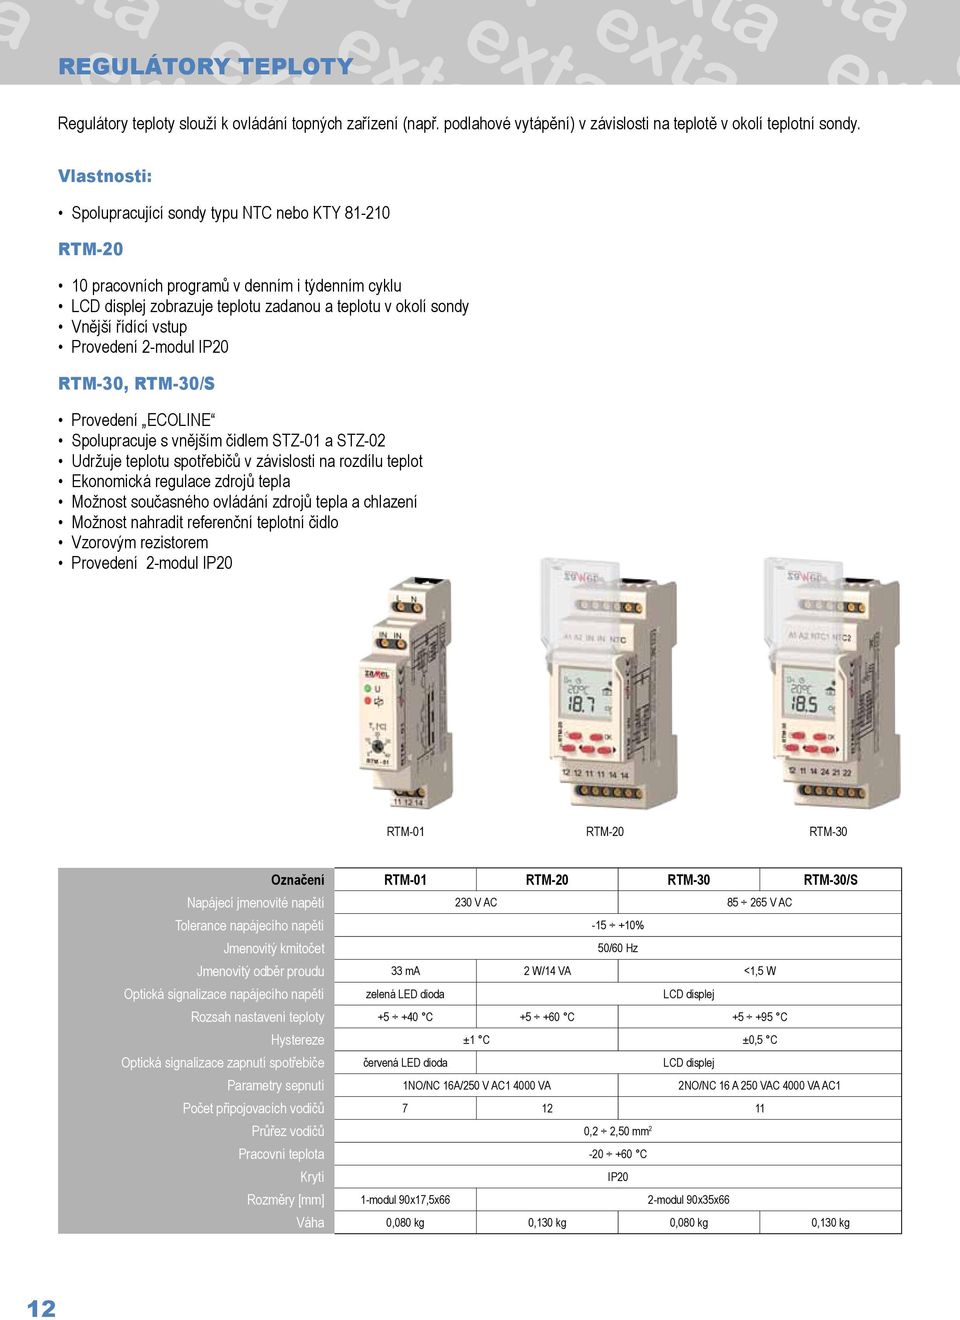 2-modul IP20 RTM-30, RTM-30/S Provedení ECOLINE Spolupracuje s vnějším čidlem STZ-01 a STZ-02 Udržuje teplotu spotřebičů v závislosti na rozdílu teplot Ekonomická regulace zdrojů tepla Možnost